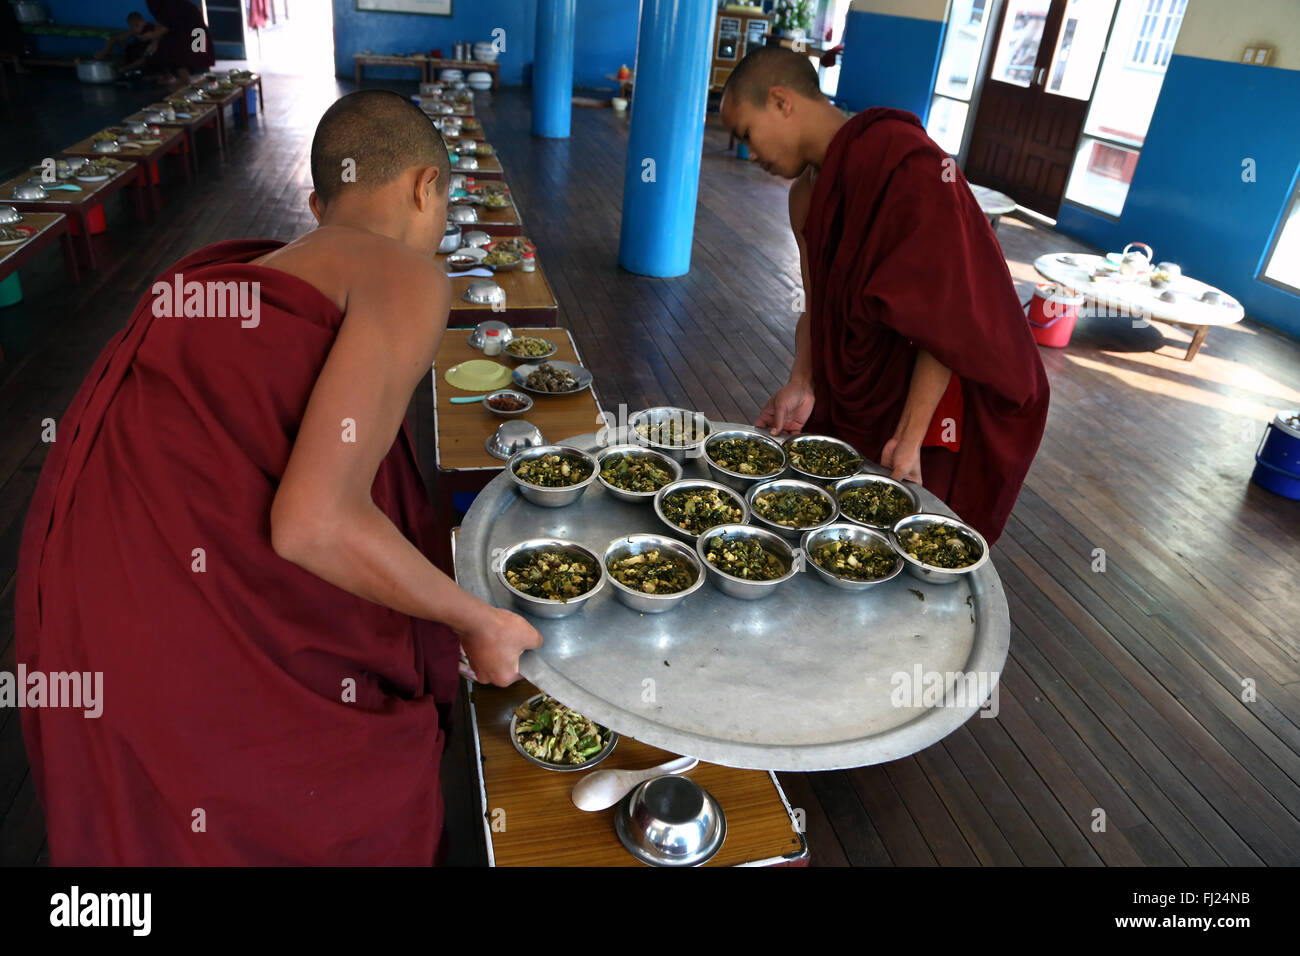 Buddhistische Mönche verteilen Lebensmittel in der Mensa der Nyaung Shwe, Myanmar (Kloster, Myanmar Birmanie) Stockfoto